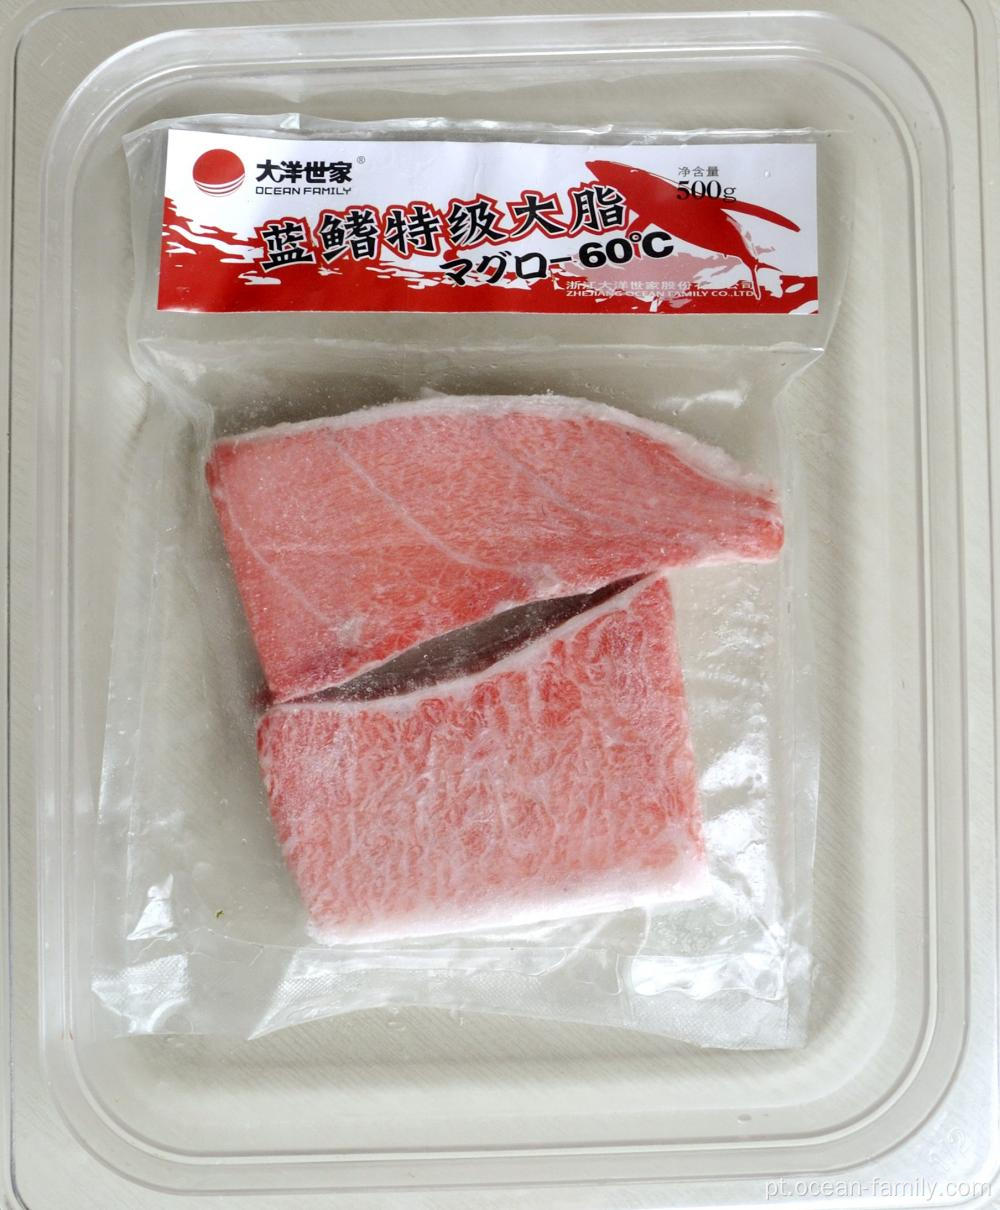 Embalagens a vácuo de carne de atum congelada picada